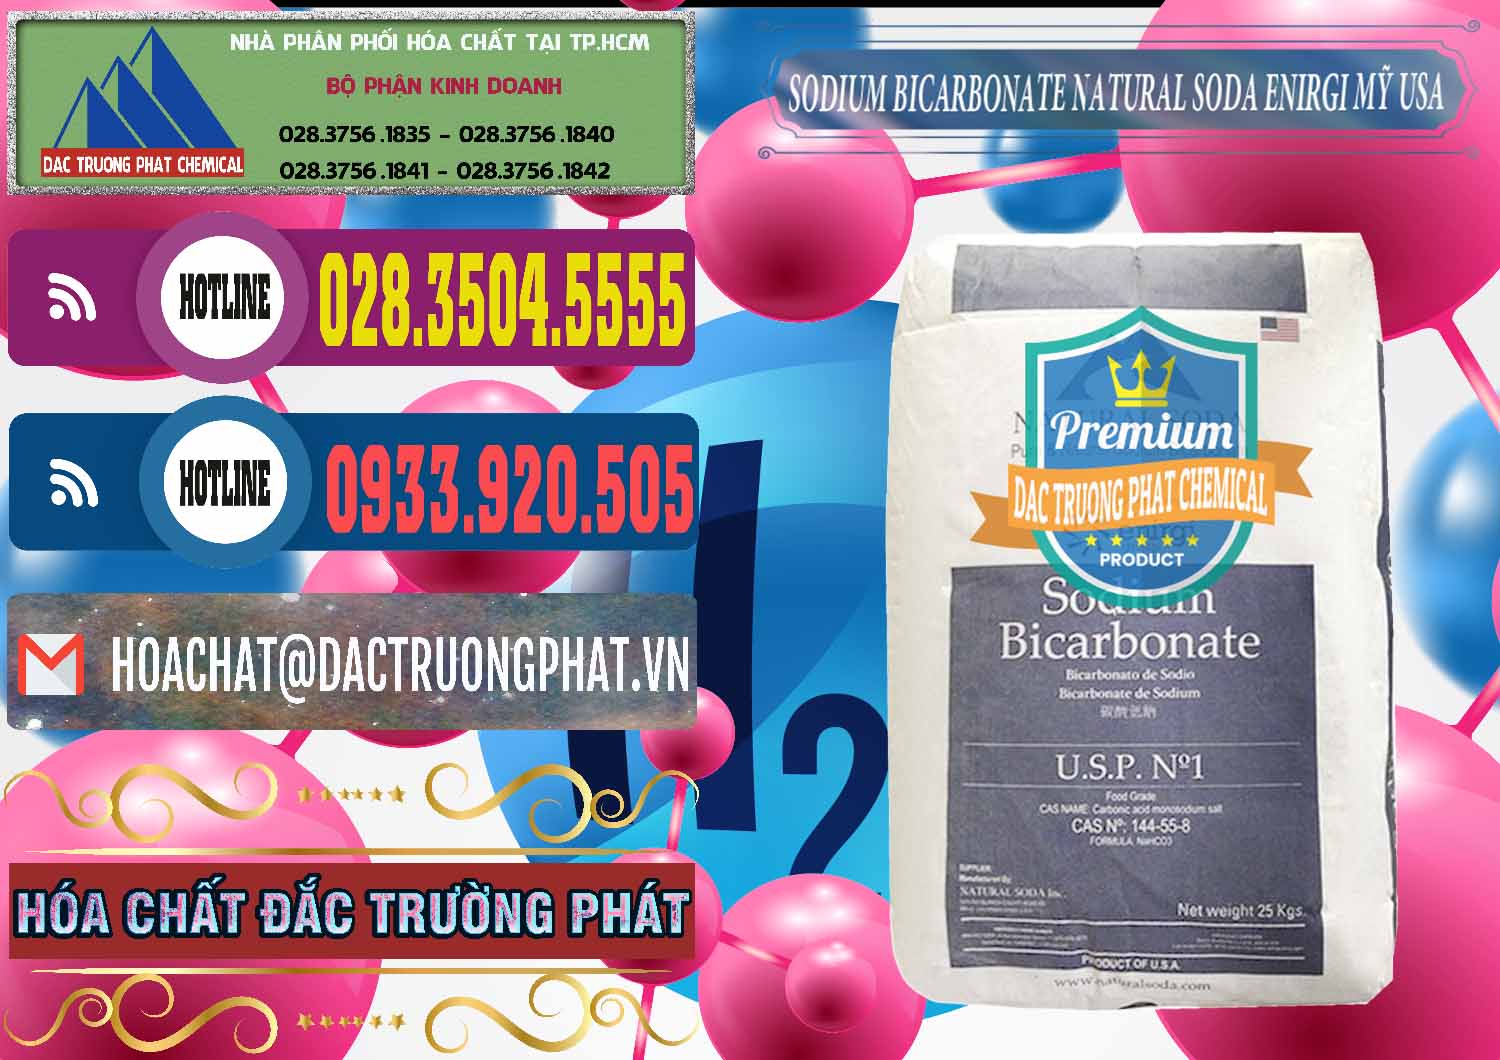 Cty bán - cung cấp Sodium Bicarbonate – Bicar NaHCO3 Food Grade Natural Soda Enirgi Mỹ USA - 0257 - Nơi phân phối ( bán ) hóa chất tại TP.HCM - muabanhoachat.com.vn